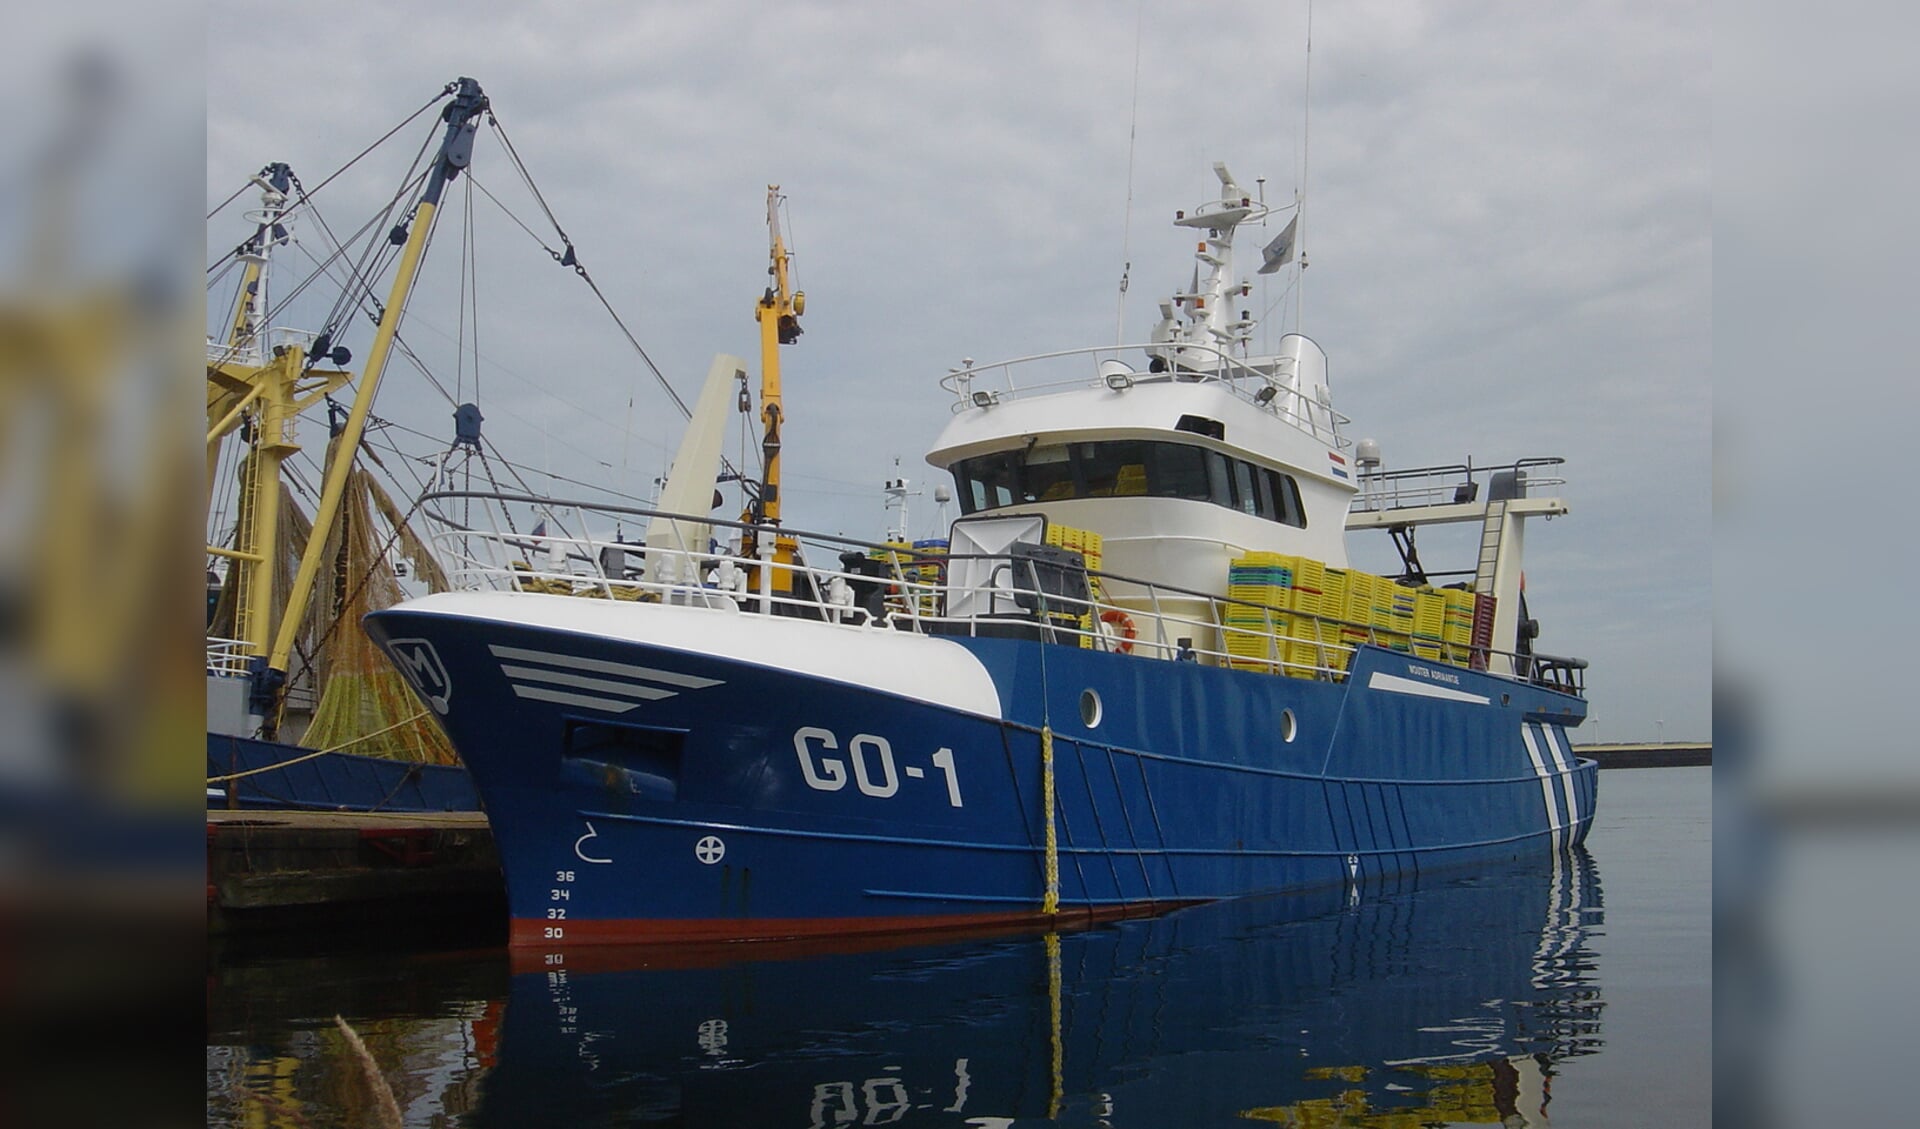 De GO-1 van de familie Melissant is een van de aanvoerders van pijlinktvis in Scheveningen. (Foto: W.M. den Heijer)